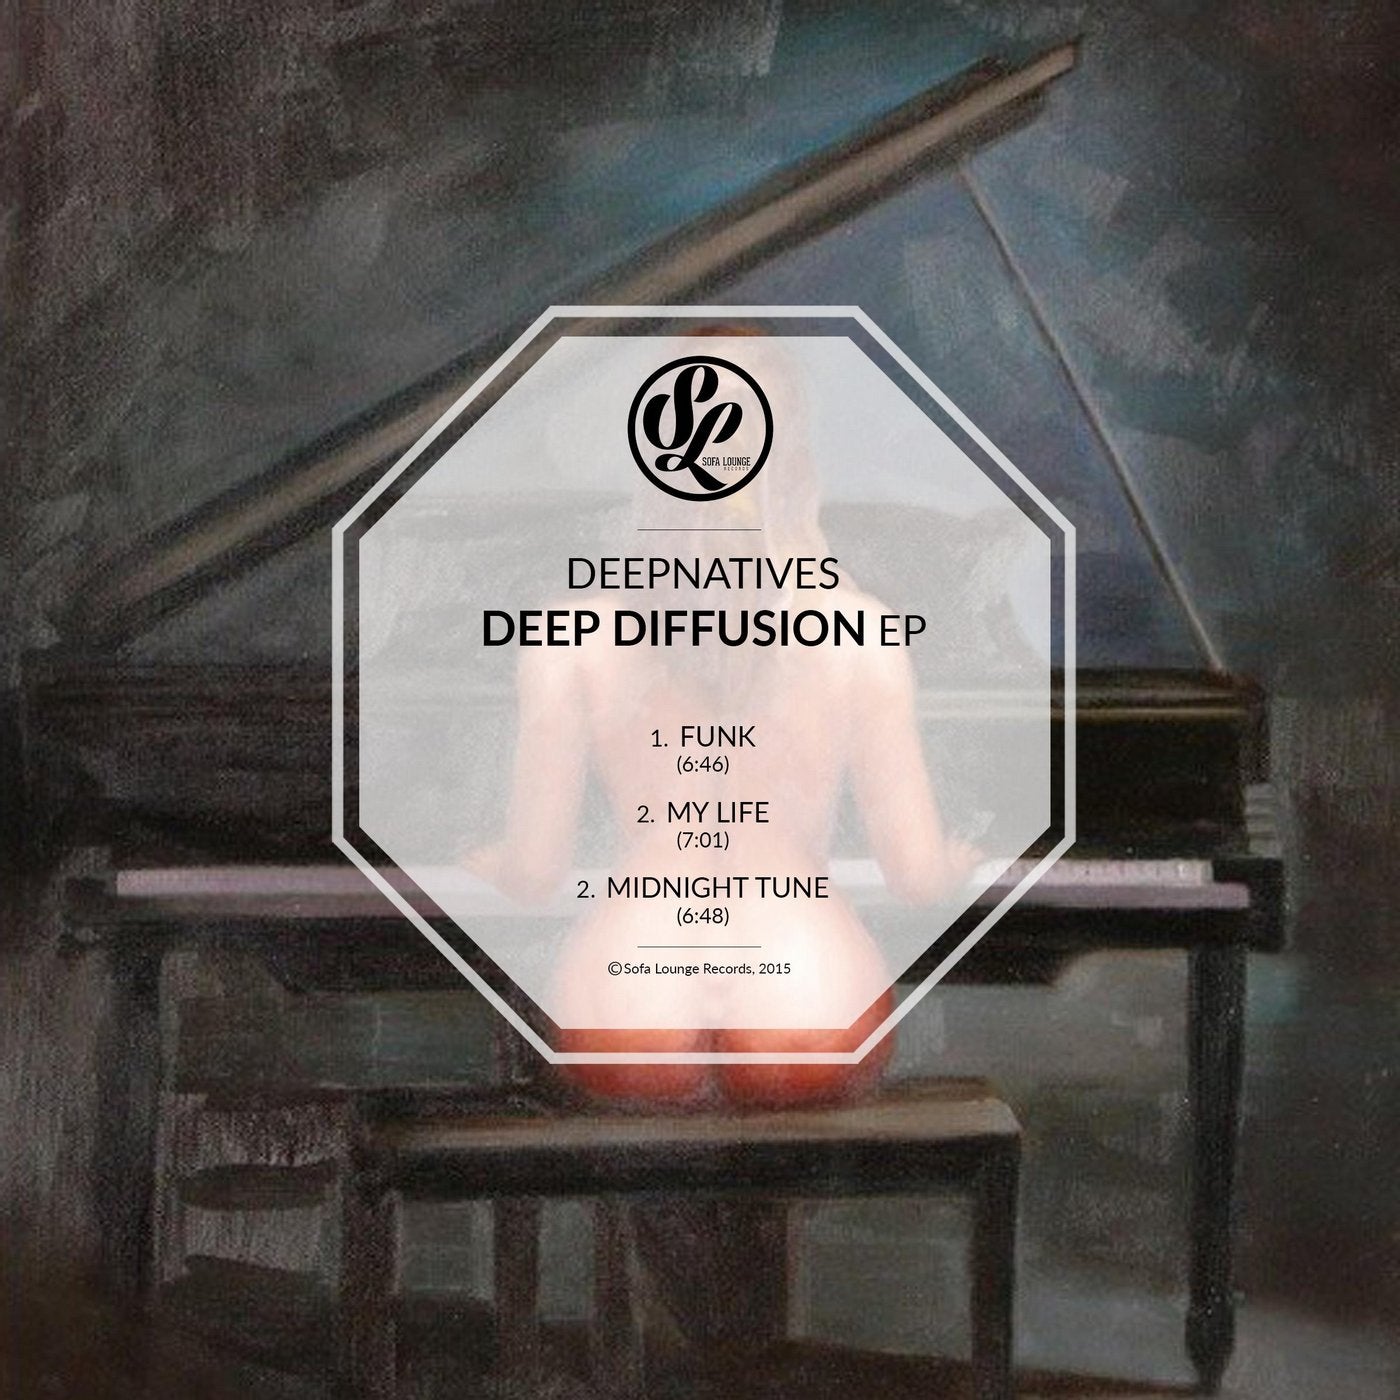 Deep Diffusion EP